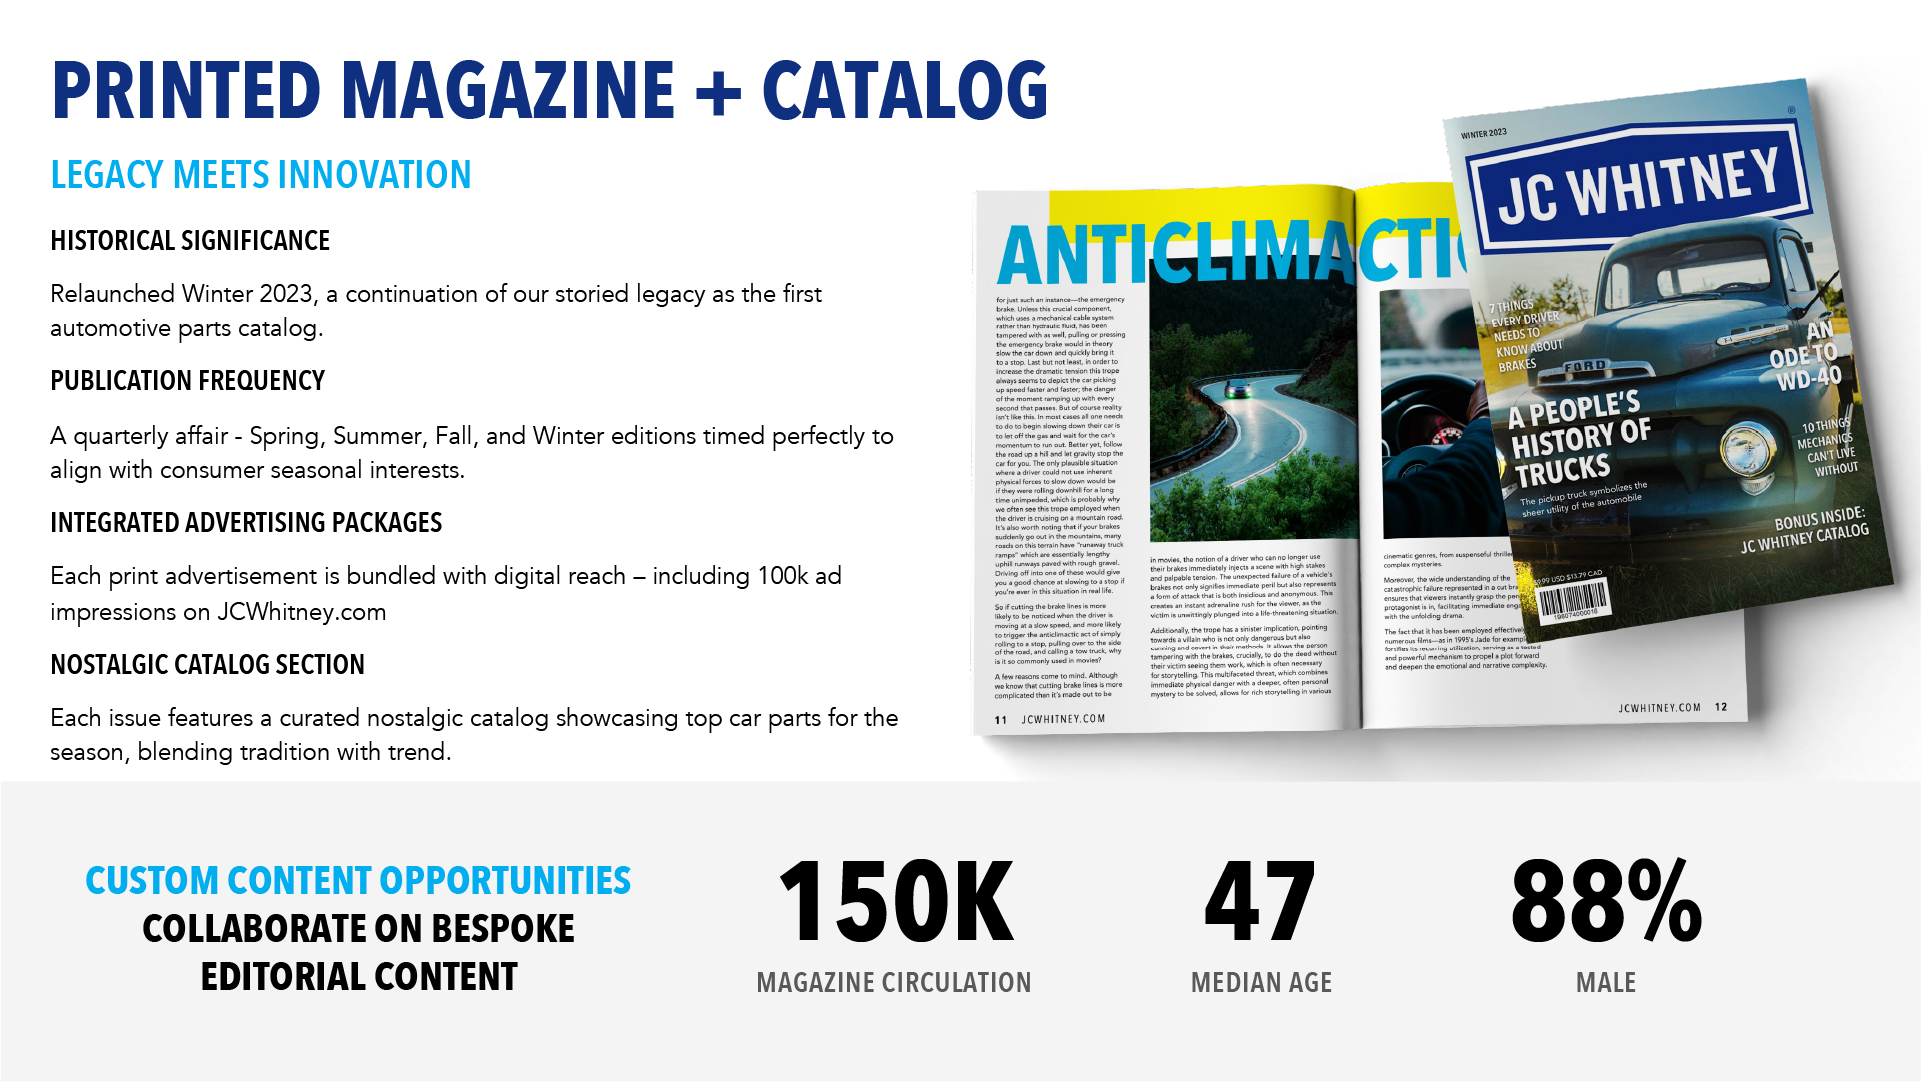 JC Whitney Printed Magazine + Catalog Statistics